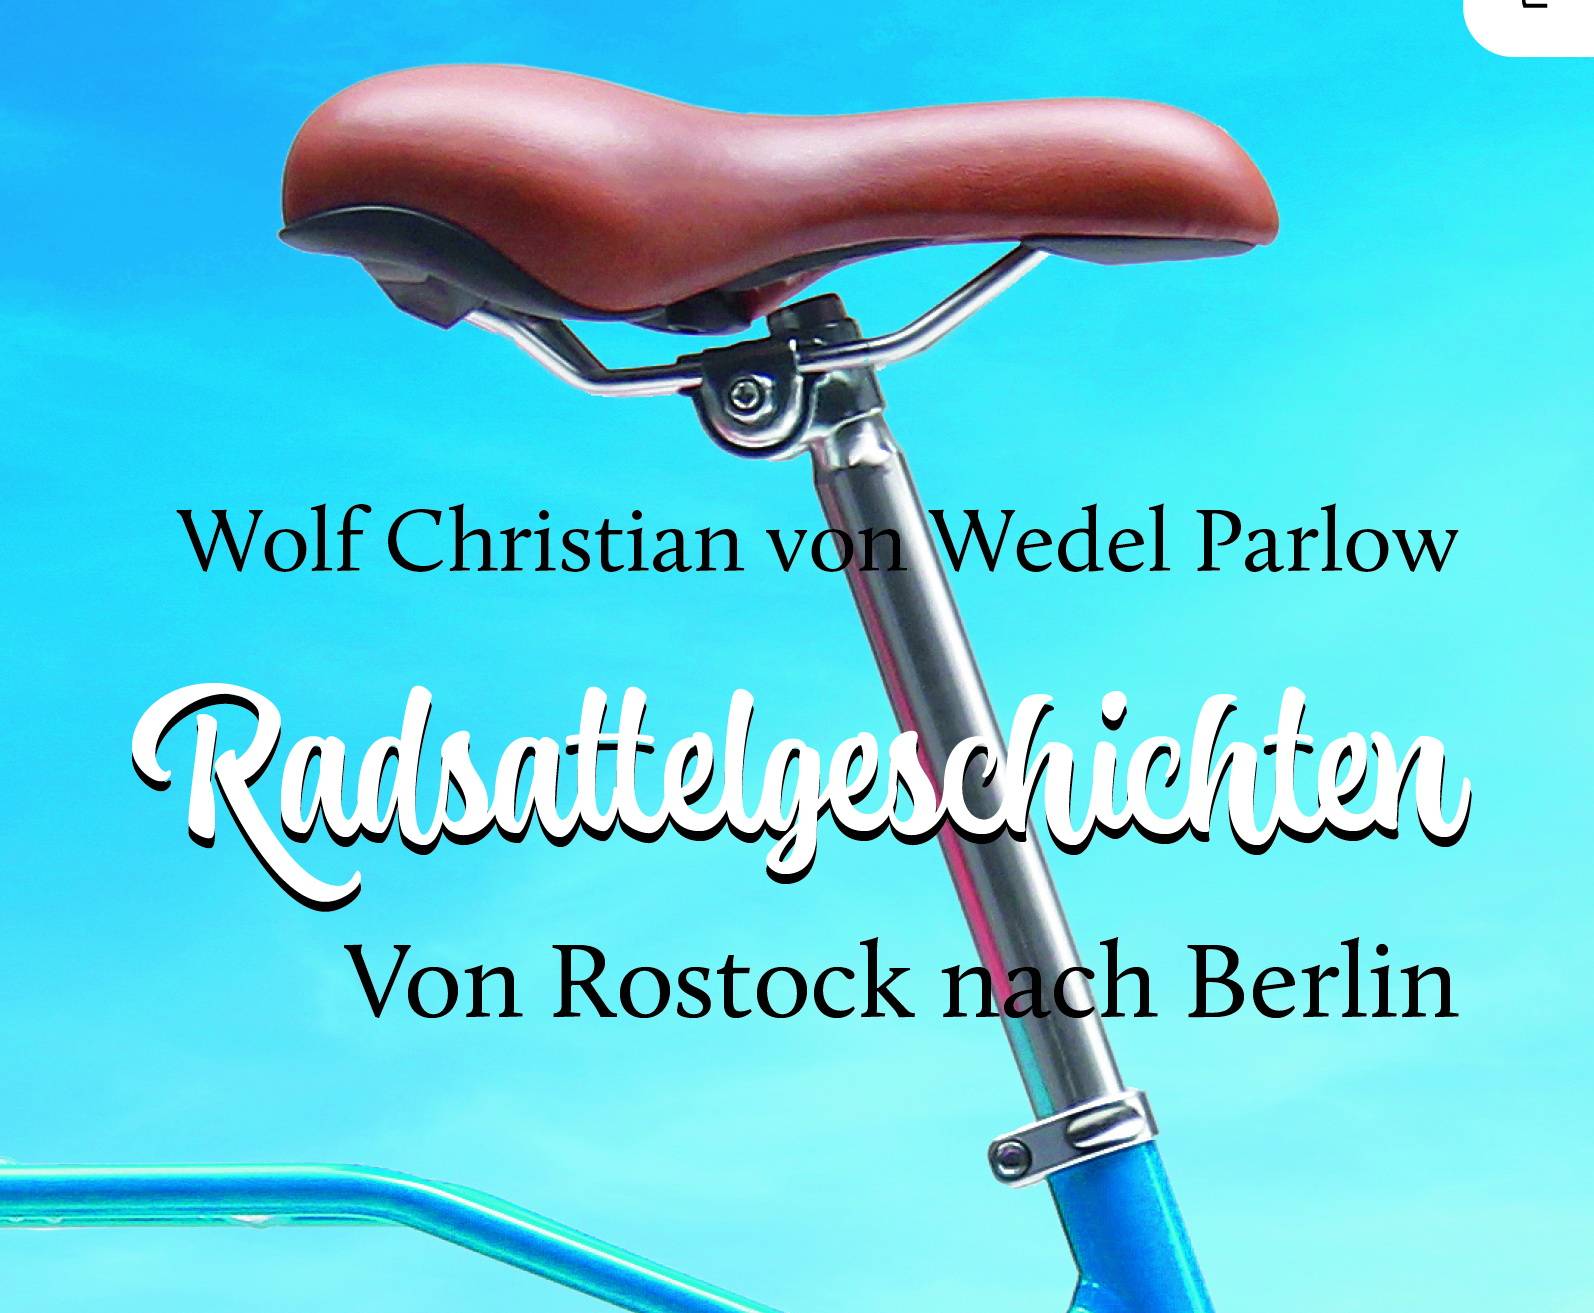 Wolf Christian von Wedel Parlows „Radsattelgeschichten“